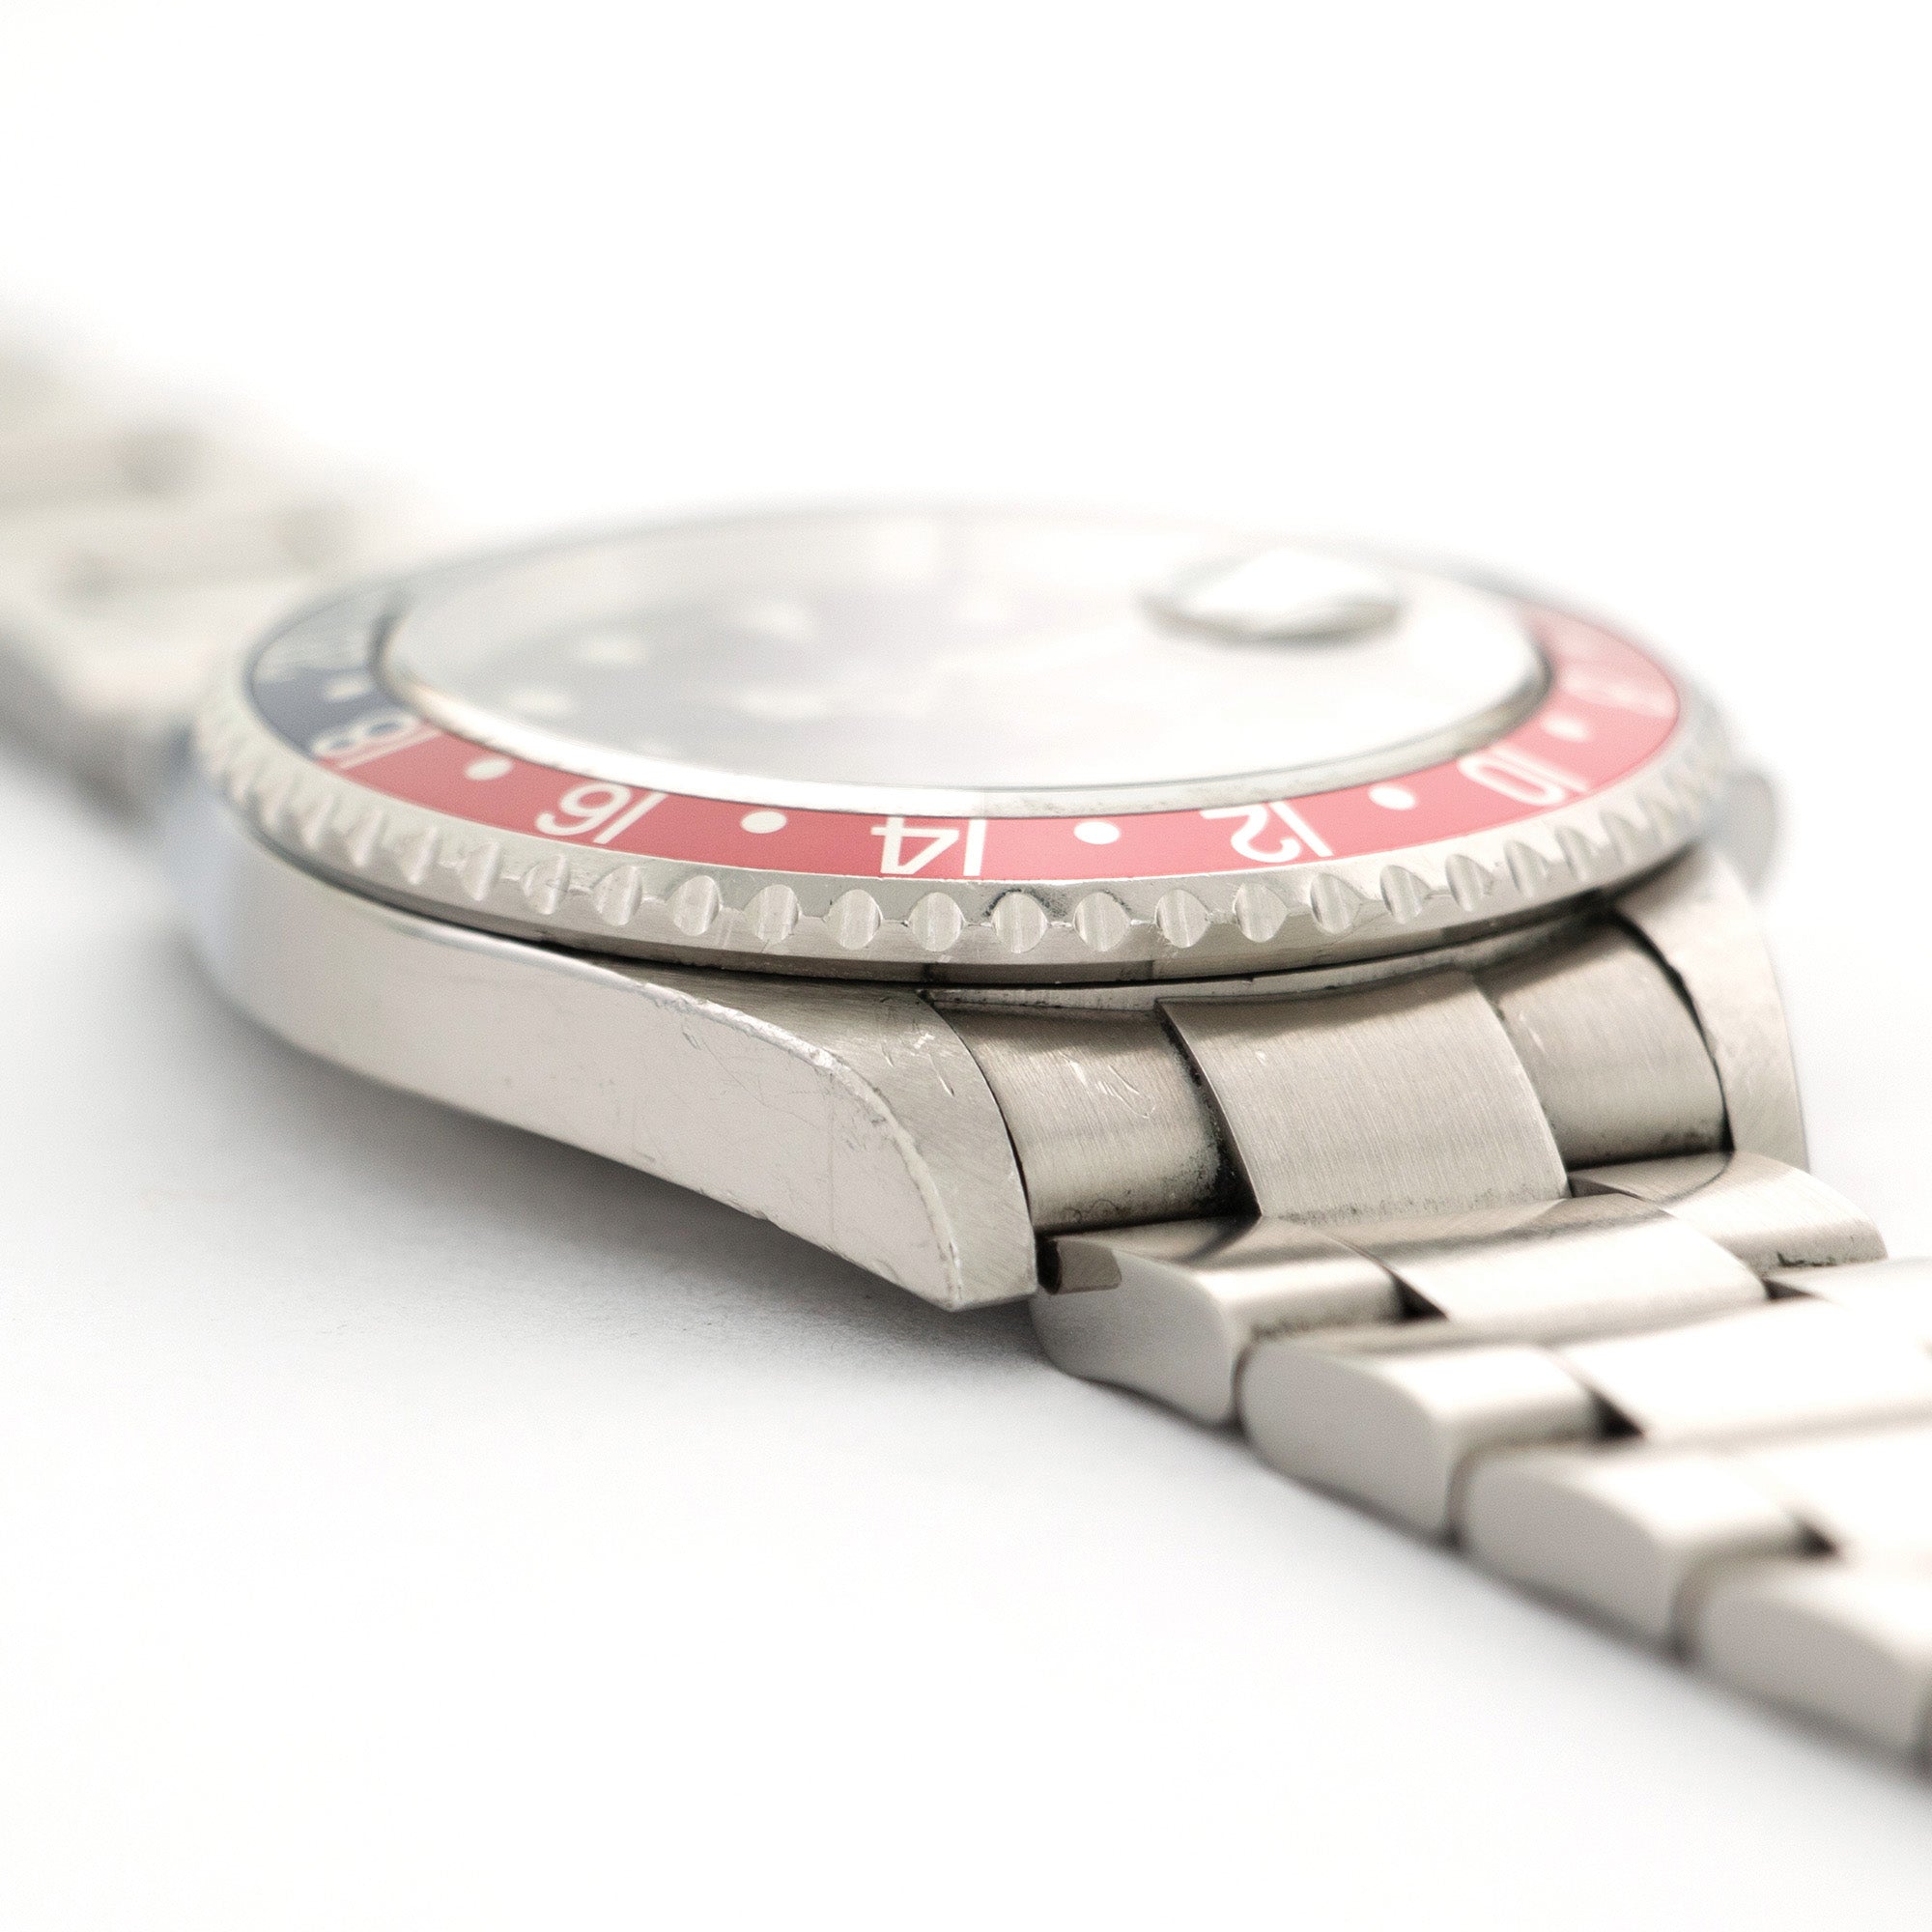 Rolex - Rolex GMT-Master II Error Dial Watch Ref. 16710 - The Keystone Watches